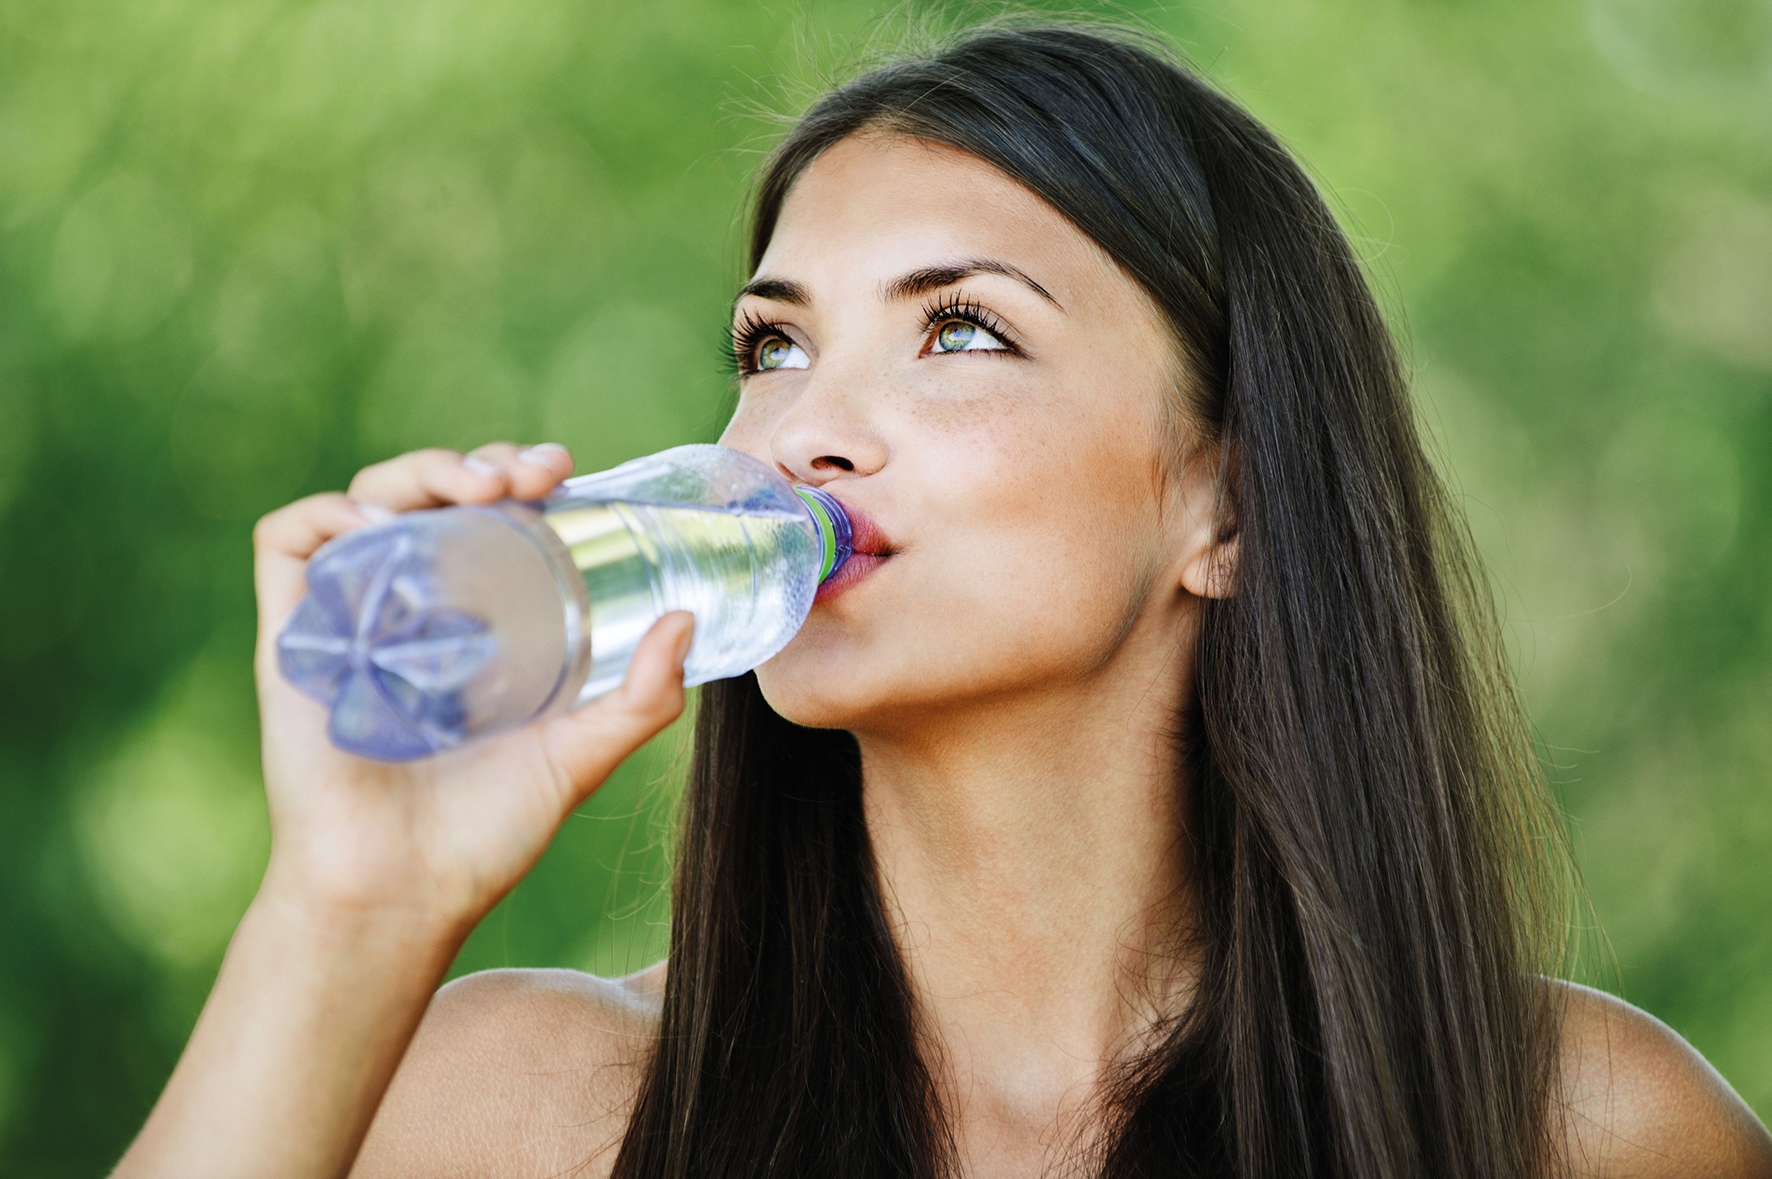 Жадно пьет воду. Девушка пьет воду. Девушка пьет воду из бутылки. Красивая девушка со стаканом воды. Девушка с бутылкой воды.